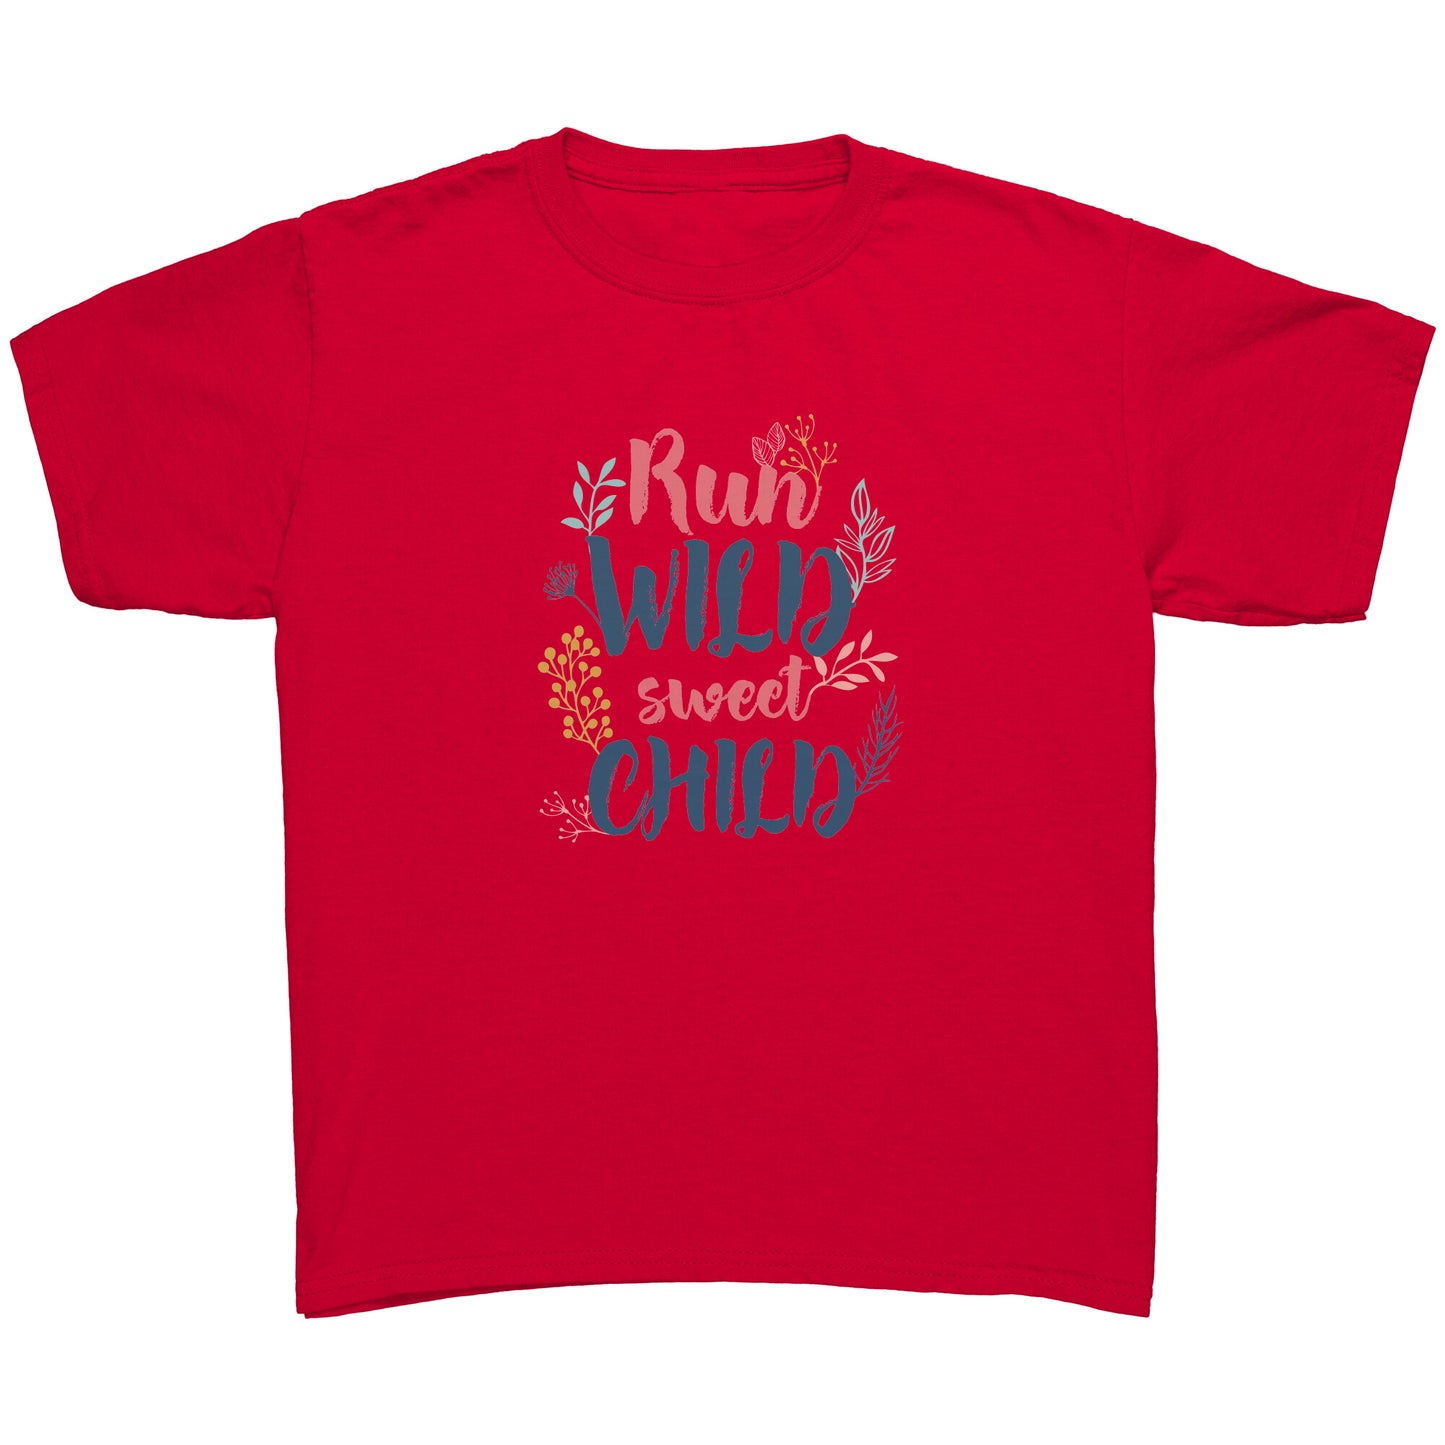 Run Wild Sweet Child Youth Shirt